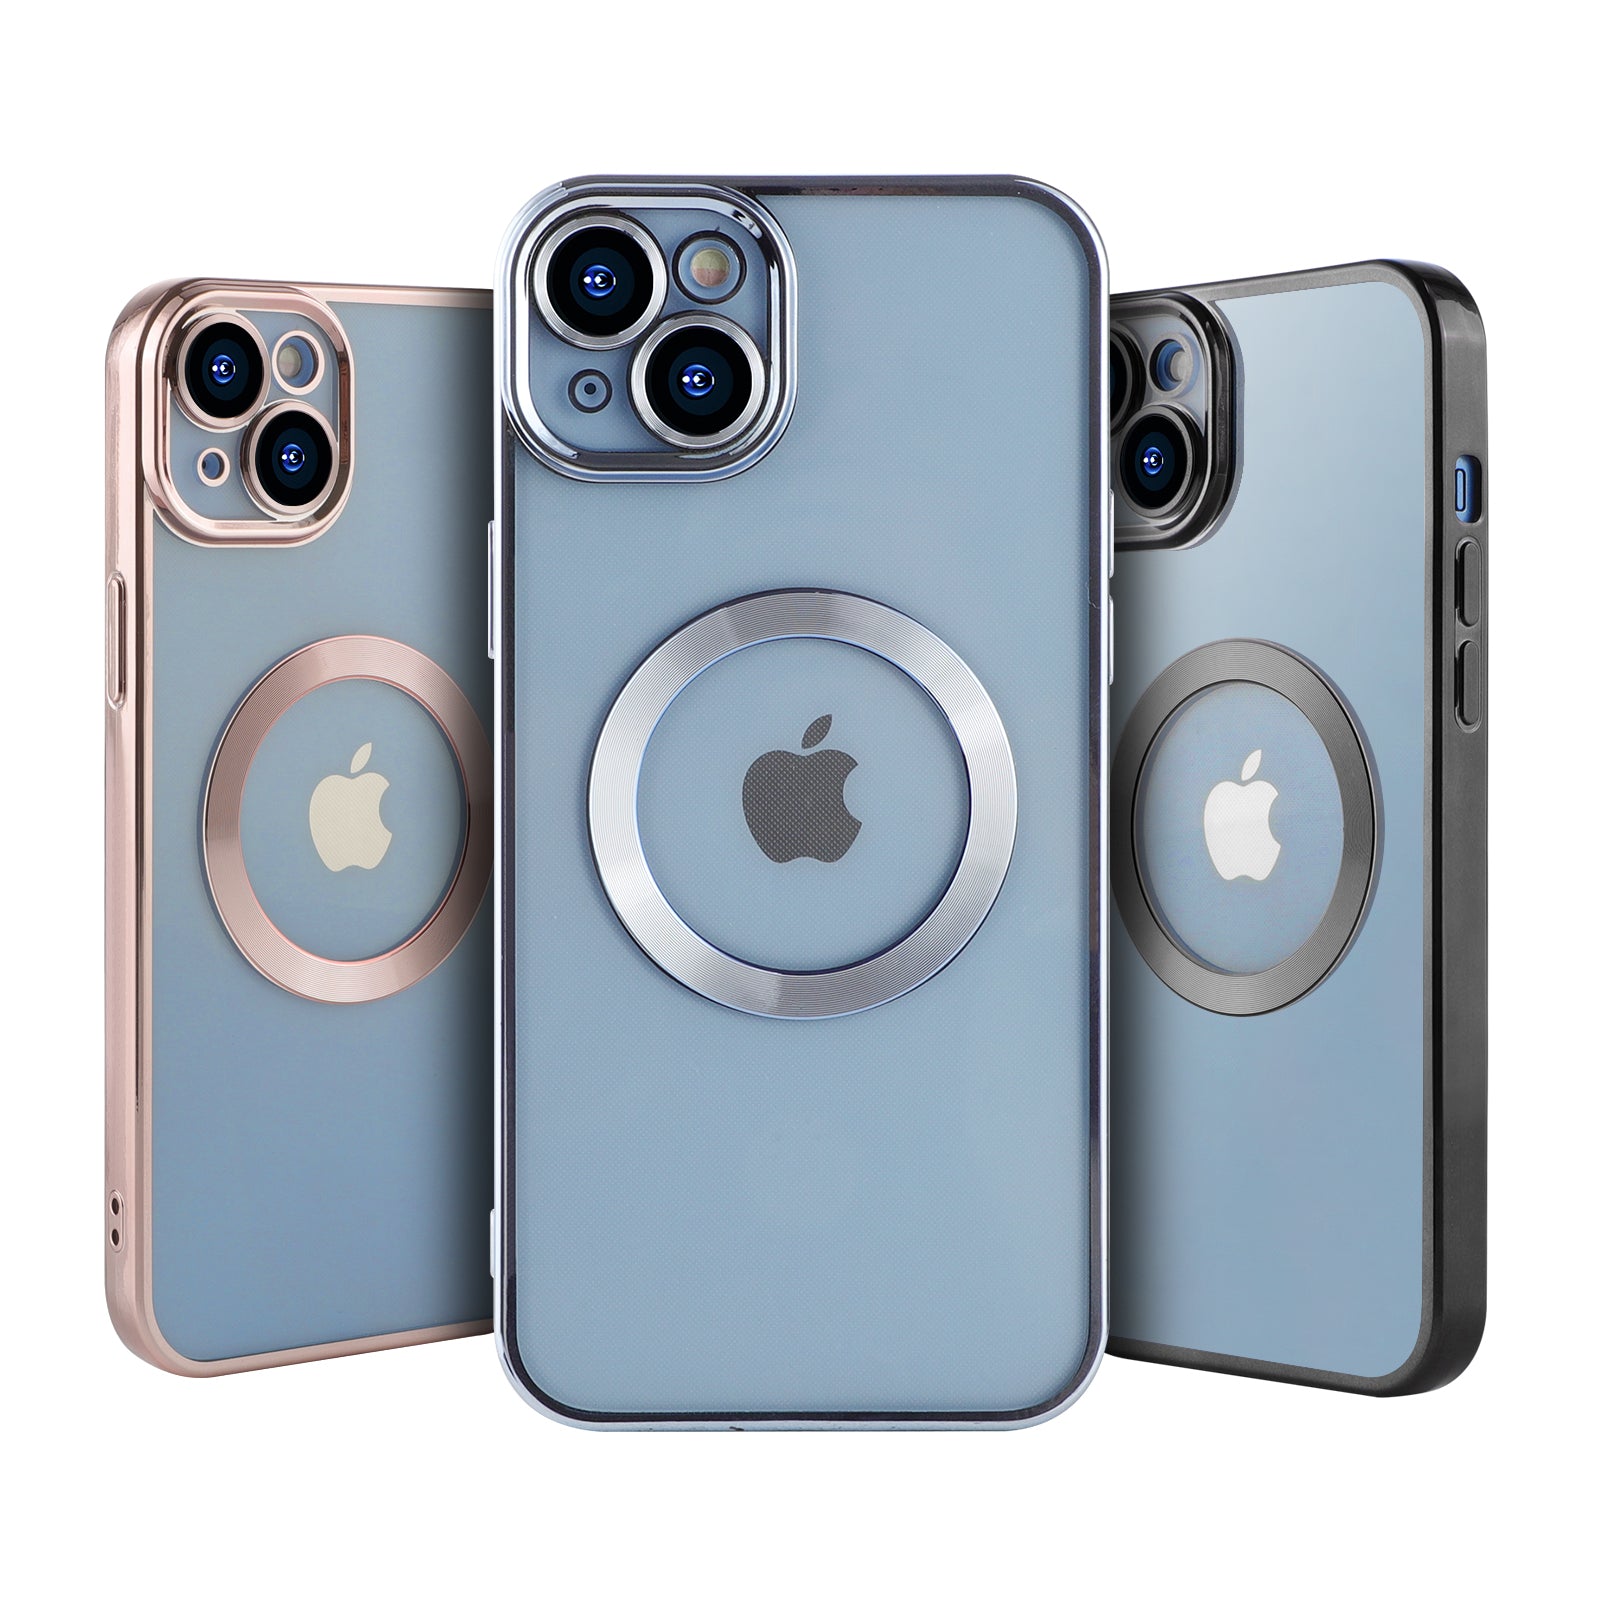 Coque En Gel Magnetique Gorilla Tech Qualité Premium Effet Chromé Bleu Pour Apple iPhone 11